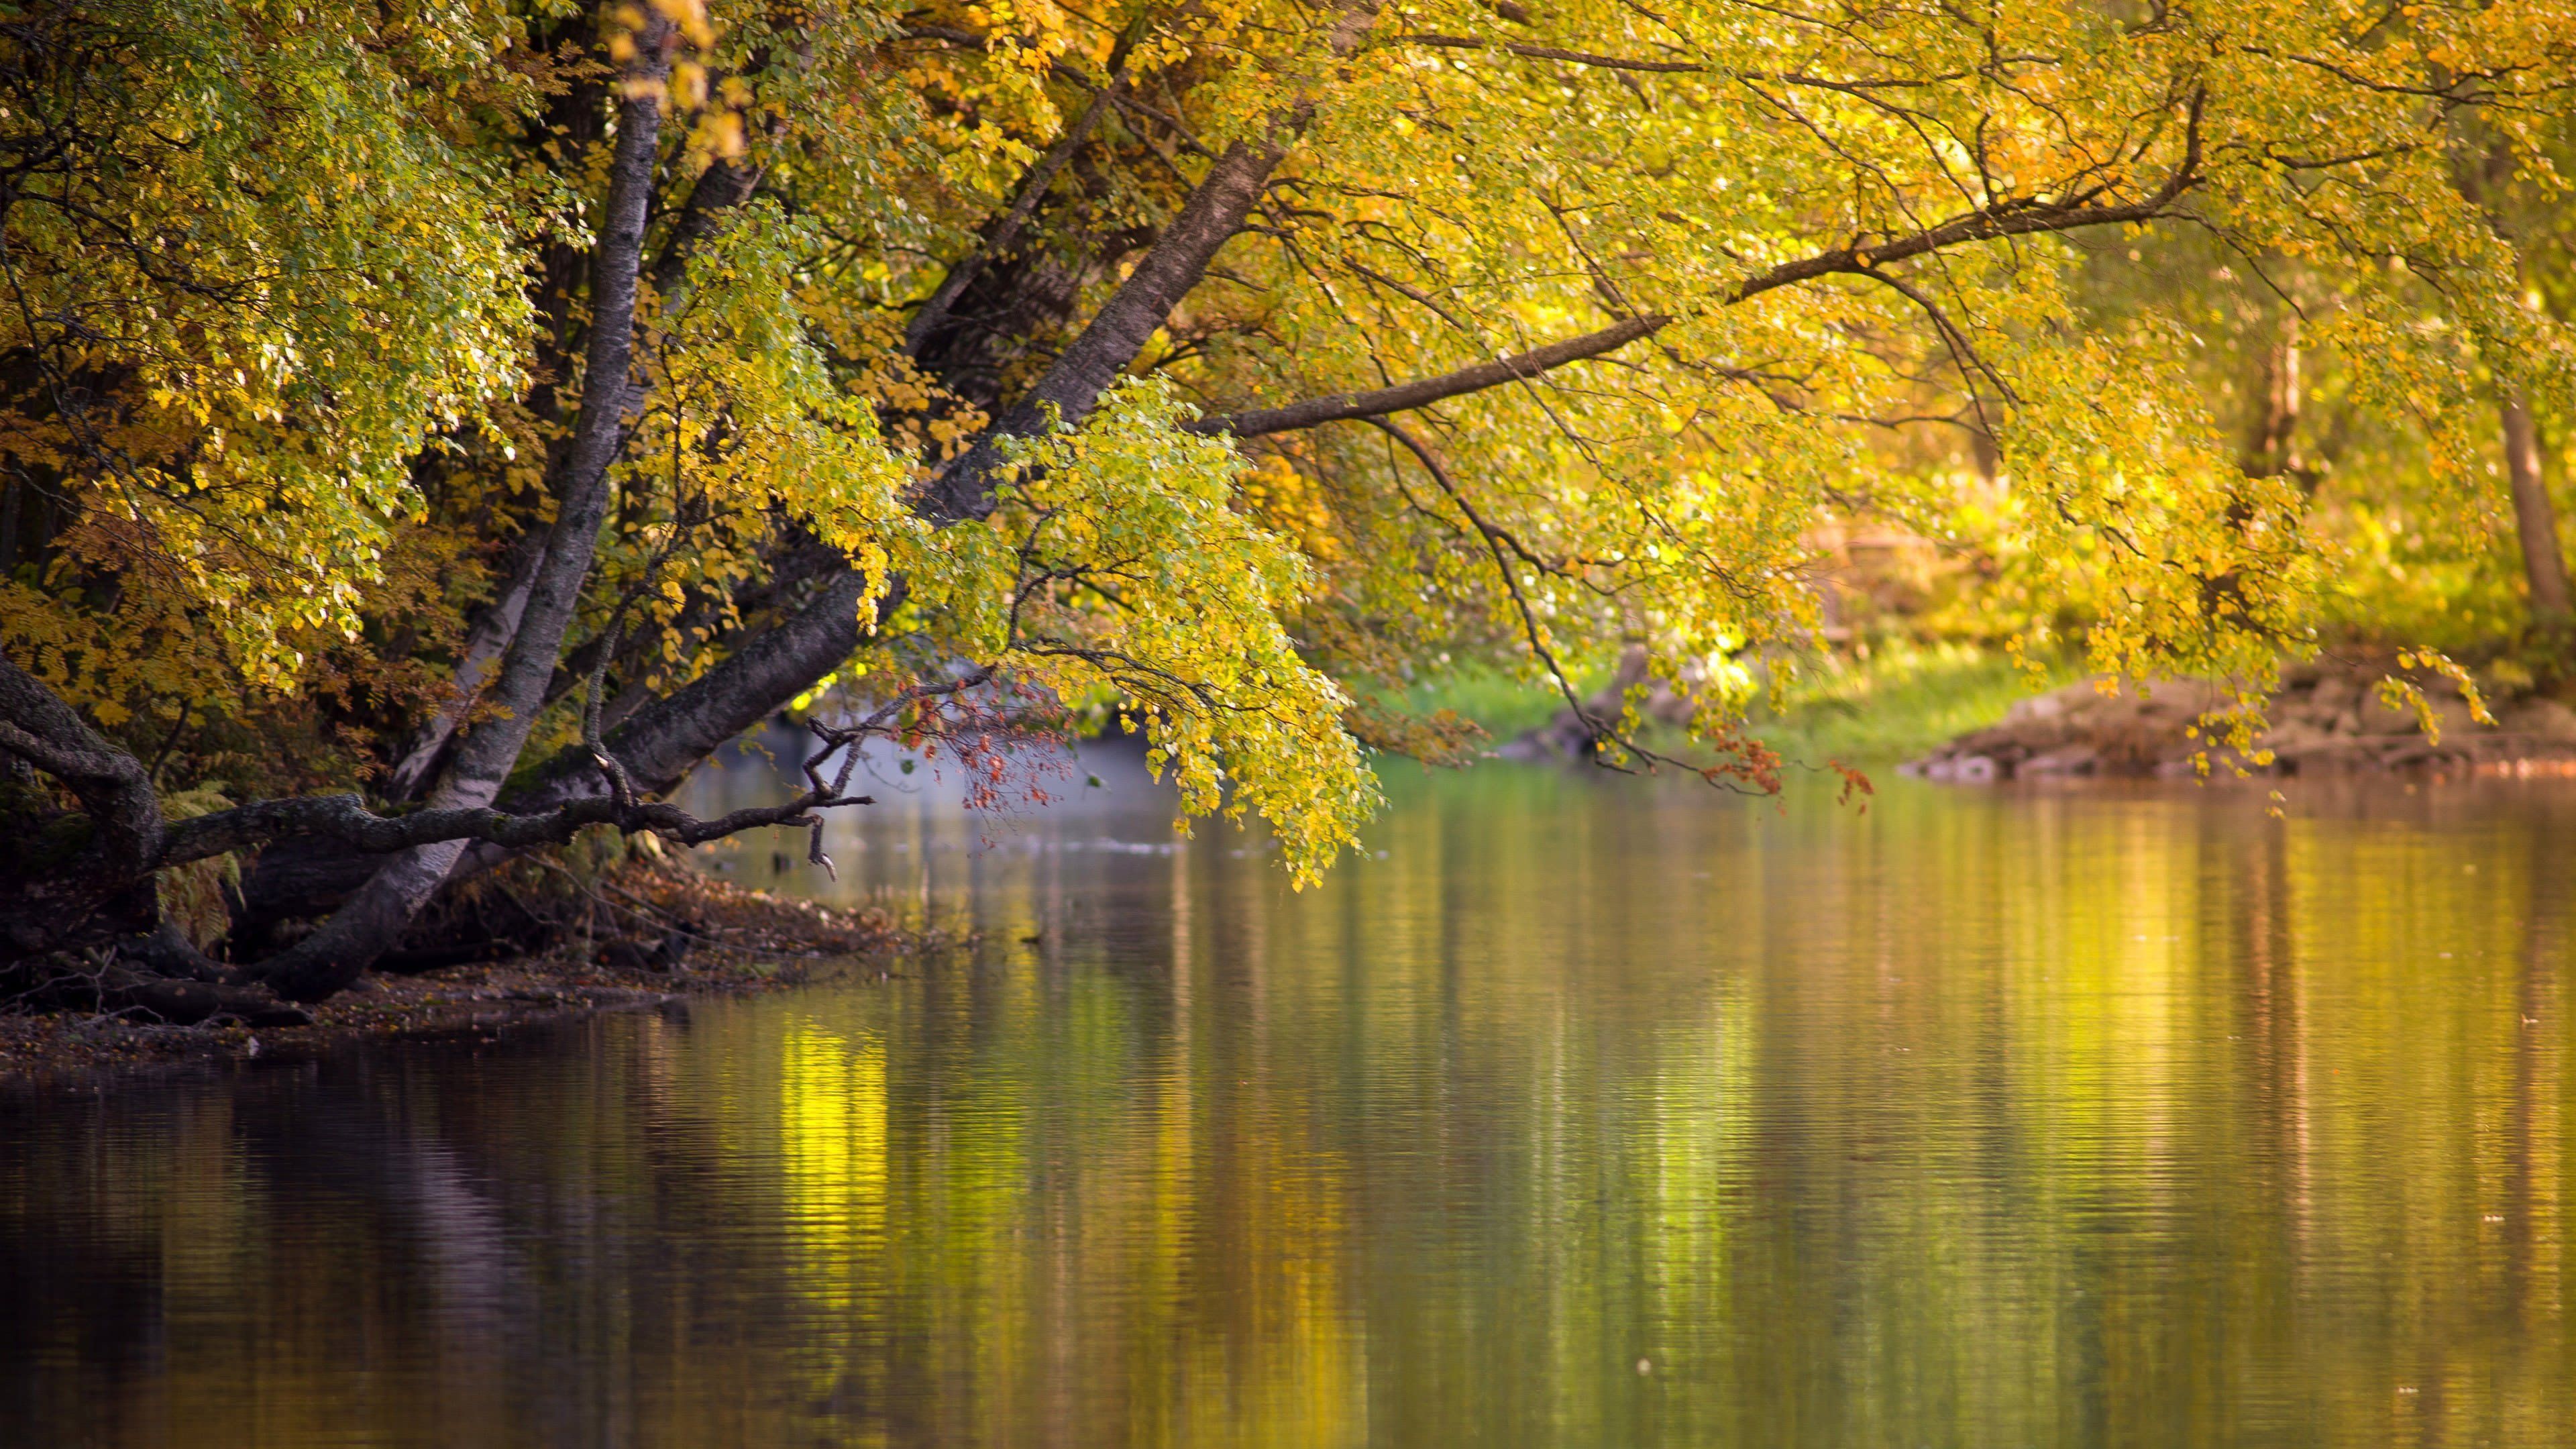 Hình nền cây xanh ven sông: Vẻ đẹp thiên nhiên với lá cây xanh đan xen giữa sông nước luôn làm chúng ta cảm thấy thư giãn và yên bình.Wallpaper cây xanh ven sông sẽ mang đến cho bạn không gian hết sức thoải mái và gần gũi với thiên nhiên. Hãy nhấp chuột để cảm nhận sự thư thái khi được ngắm nhìn những thước hình nền này.